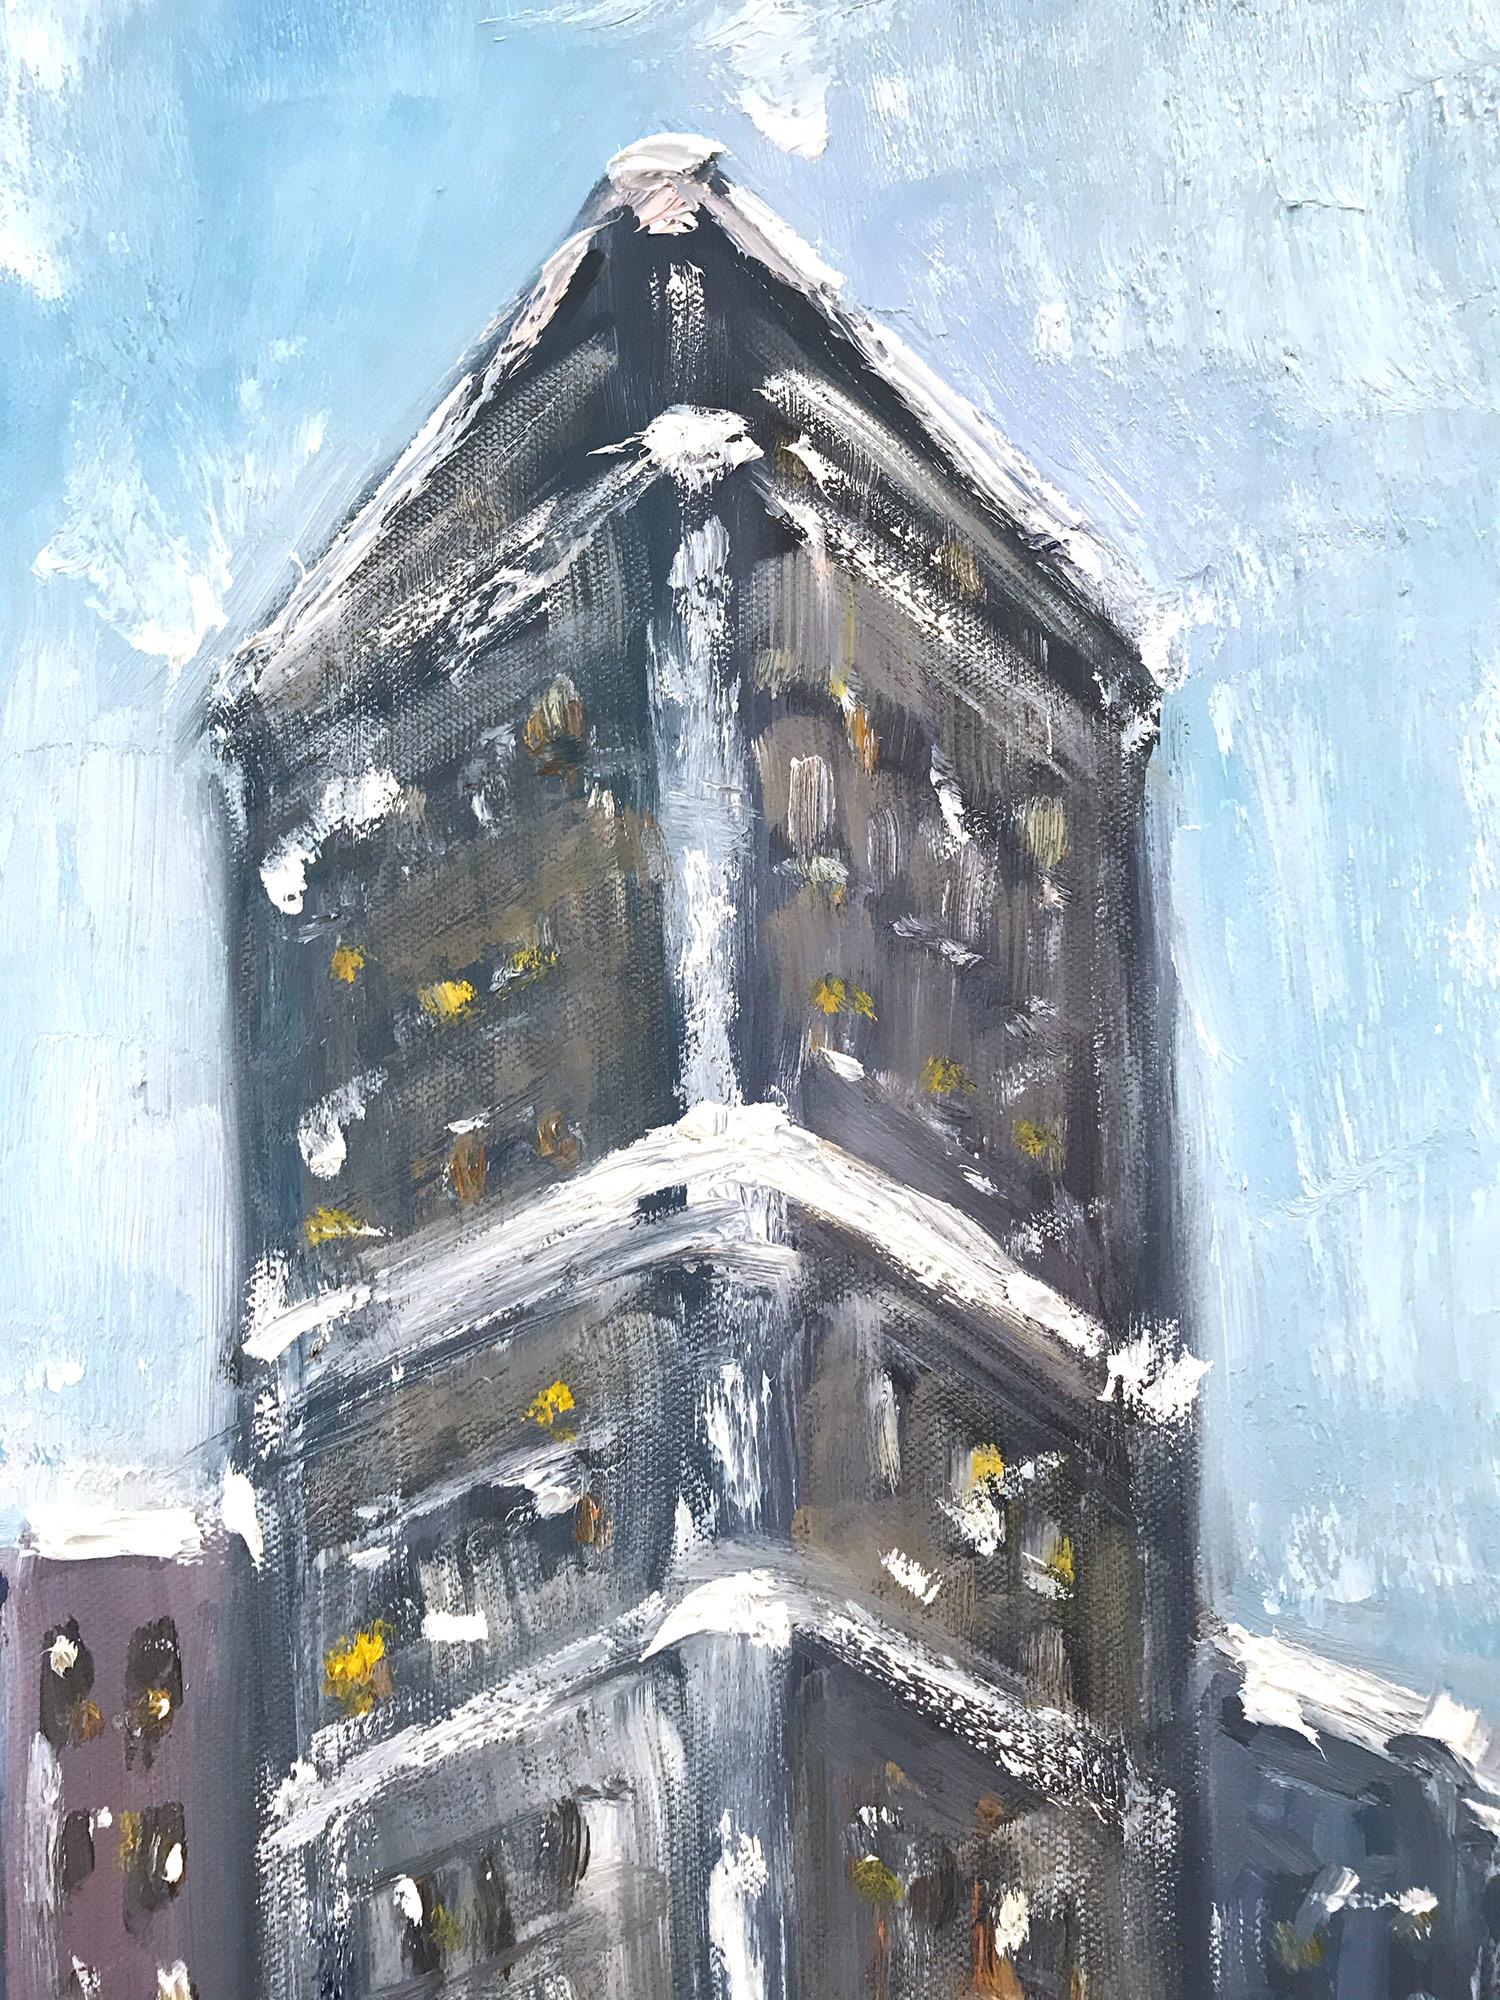 Eine charmante Darstellung des Flatiron-Gebäudes in New York City mit Figuren im Schnee. Eine gemütliche impressionistische Straßenszene mit Farben aus Kobalt, Weiß und gebranntem Siena. Die ikonische Straßenszene mit ihren schönen Pinselstrichen